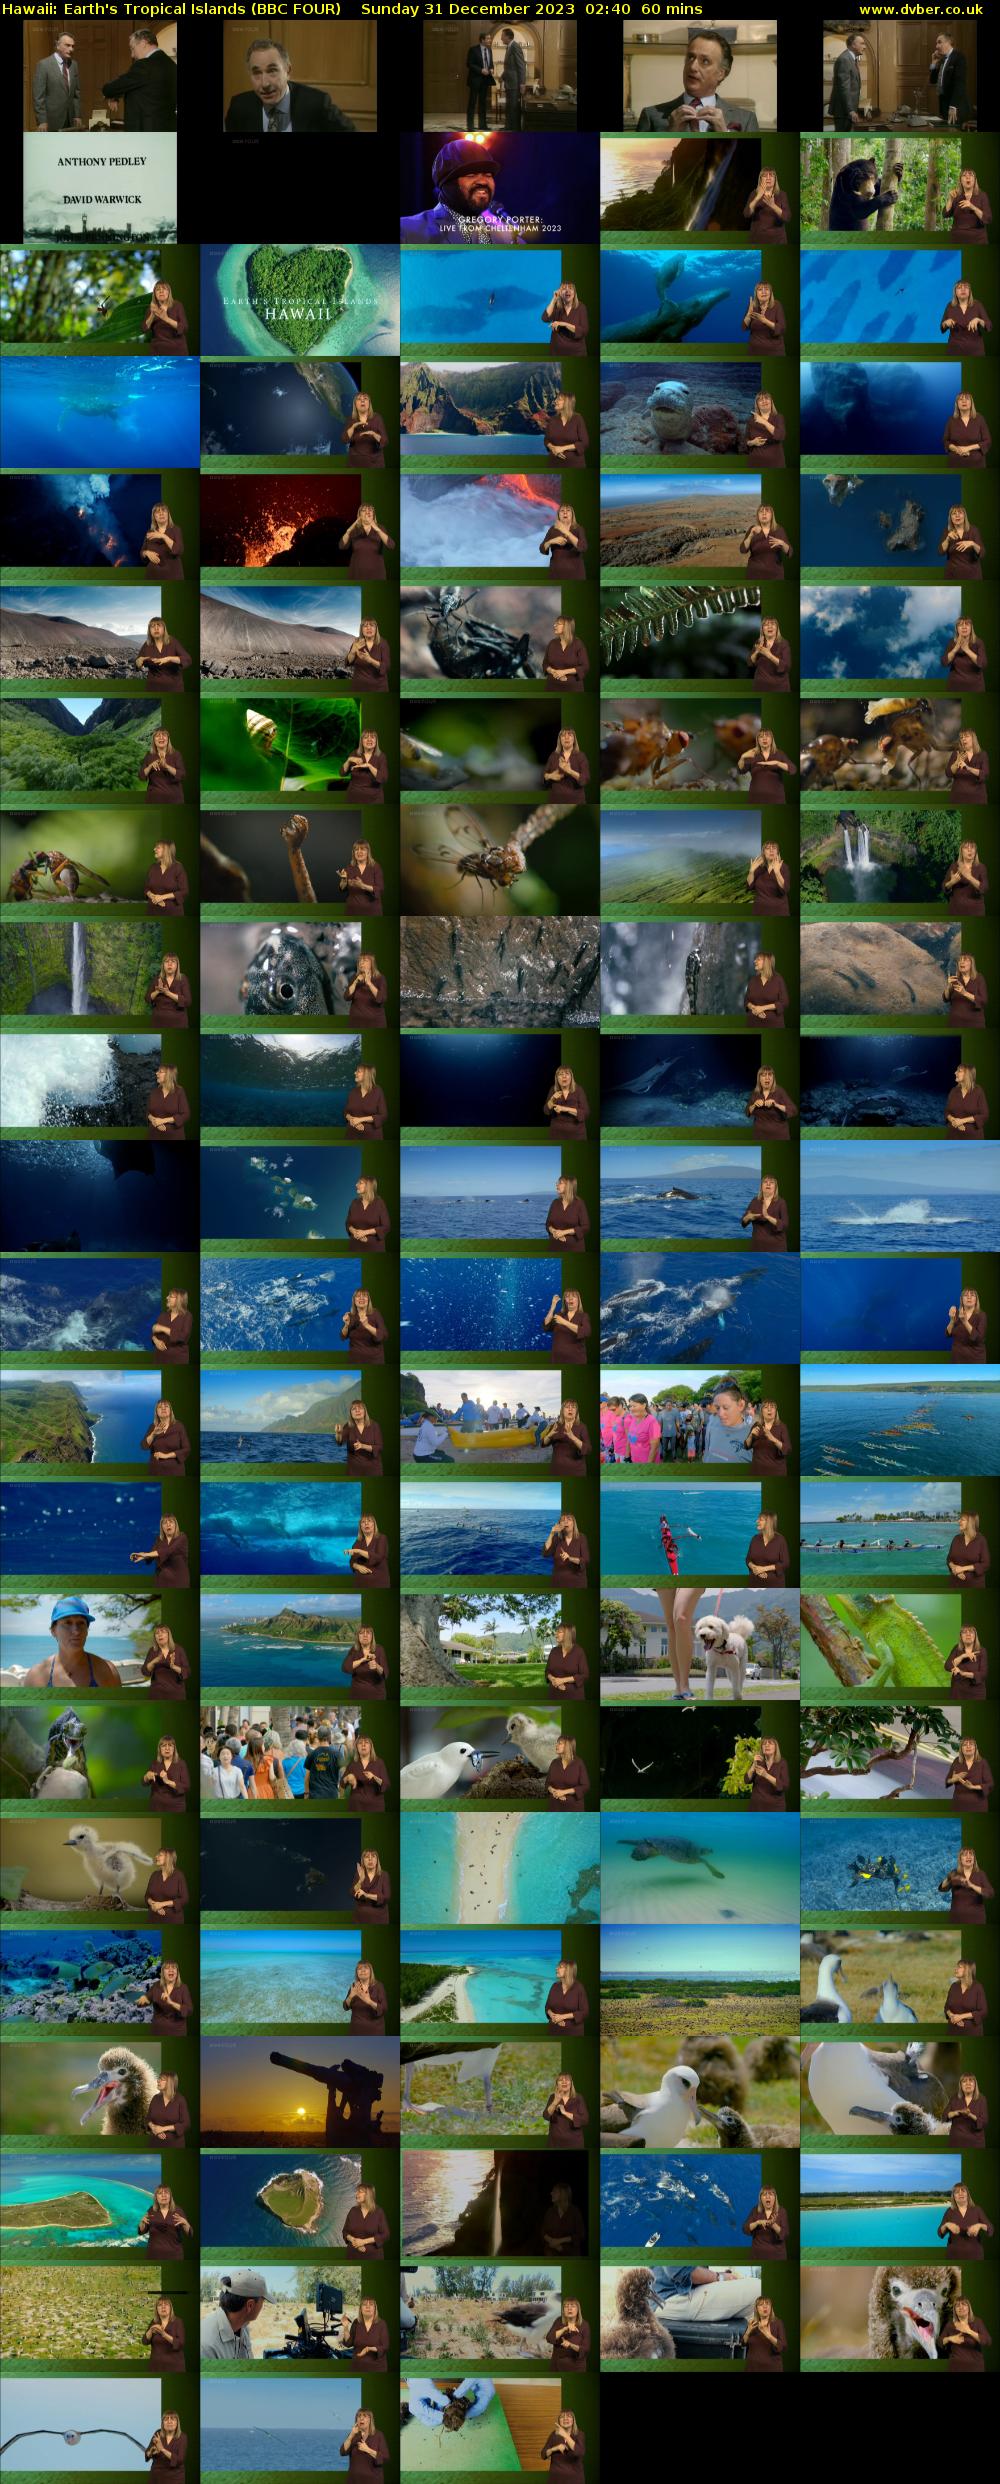 Hawaii: Earth's Tropical Islands (BBC FOUR) Sunday 31 December 2023 02:40 - 03:40